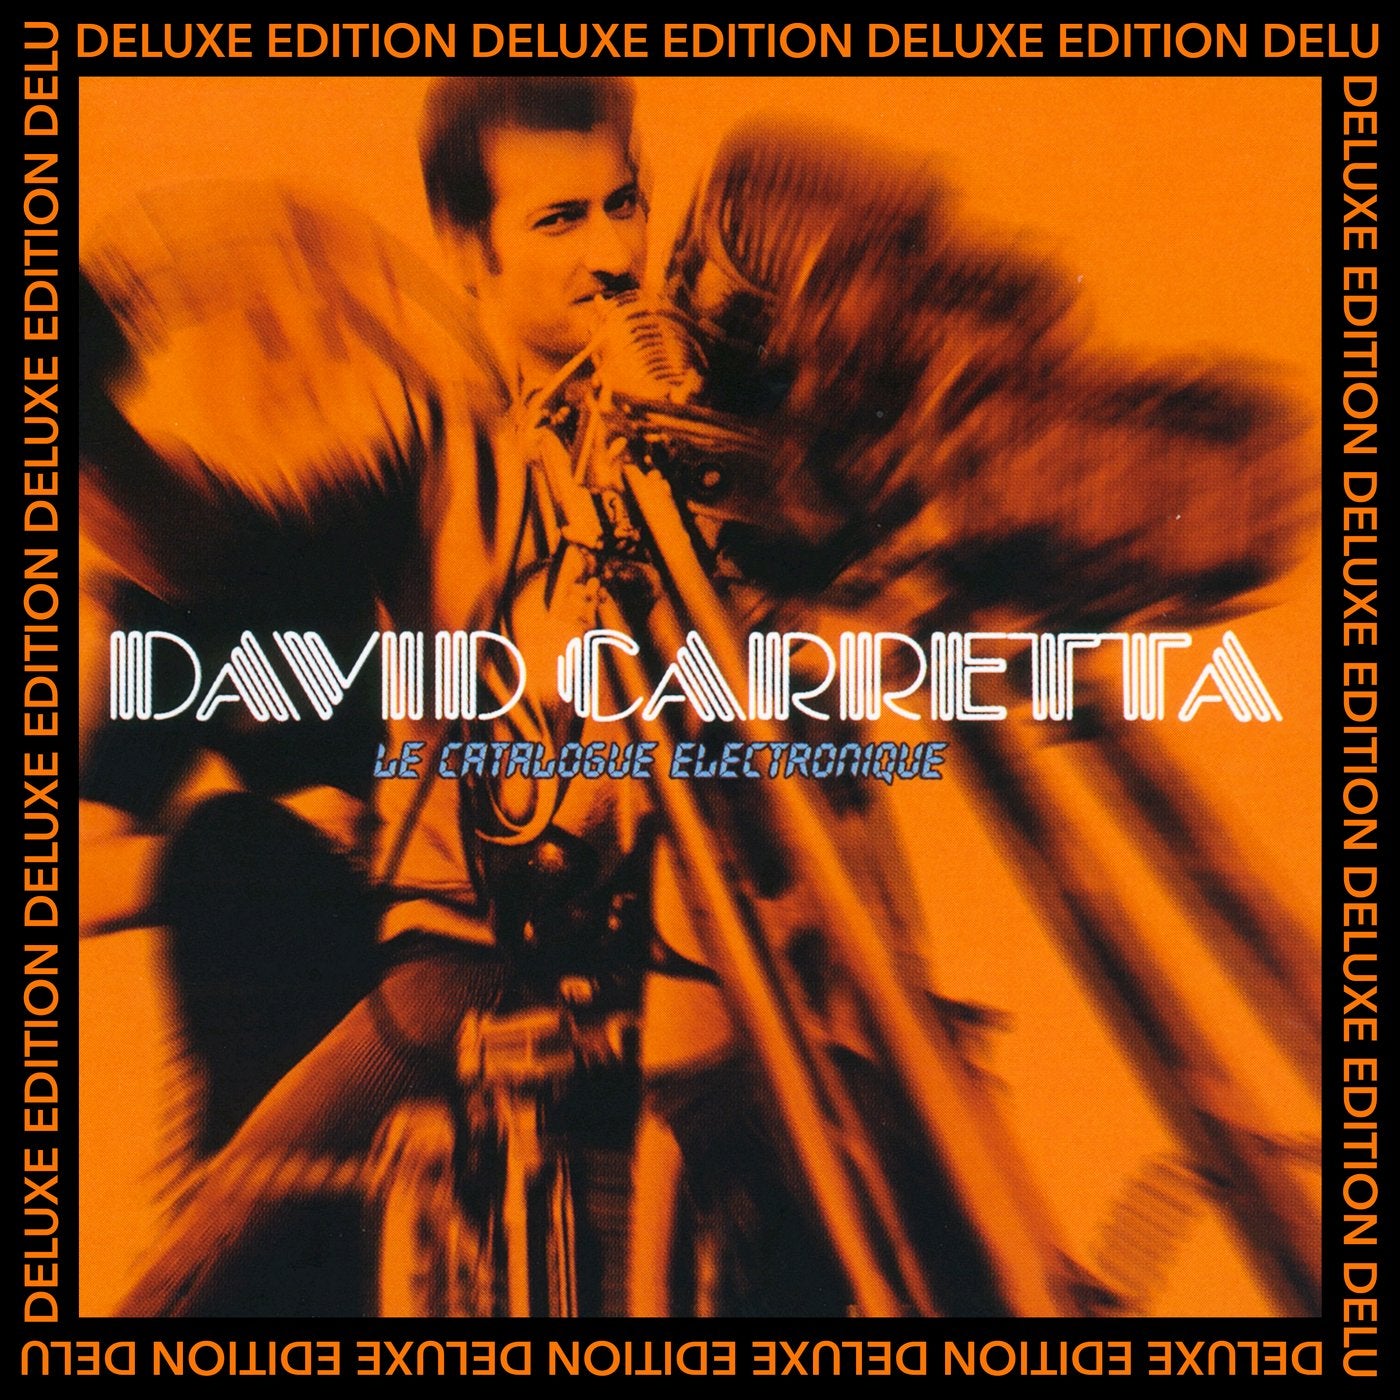 David Carretta – Le catalogue électronique (Deluxe Edition)